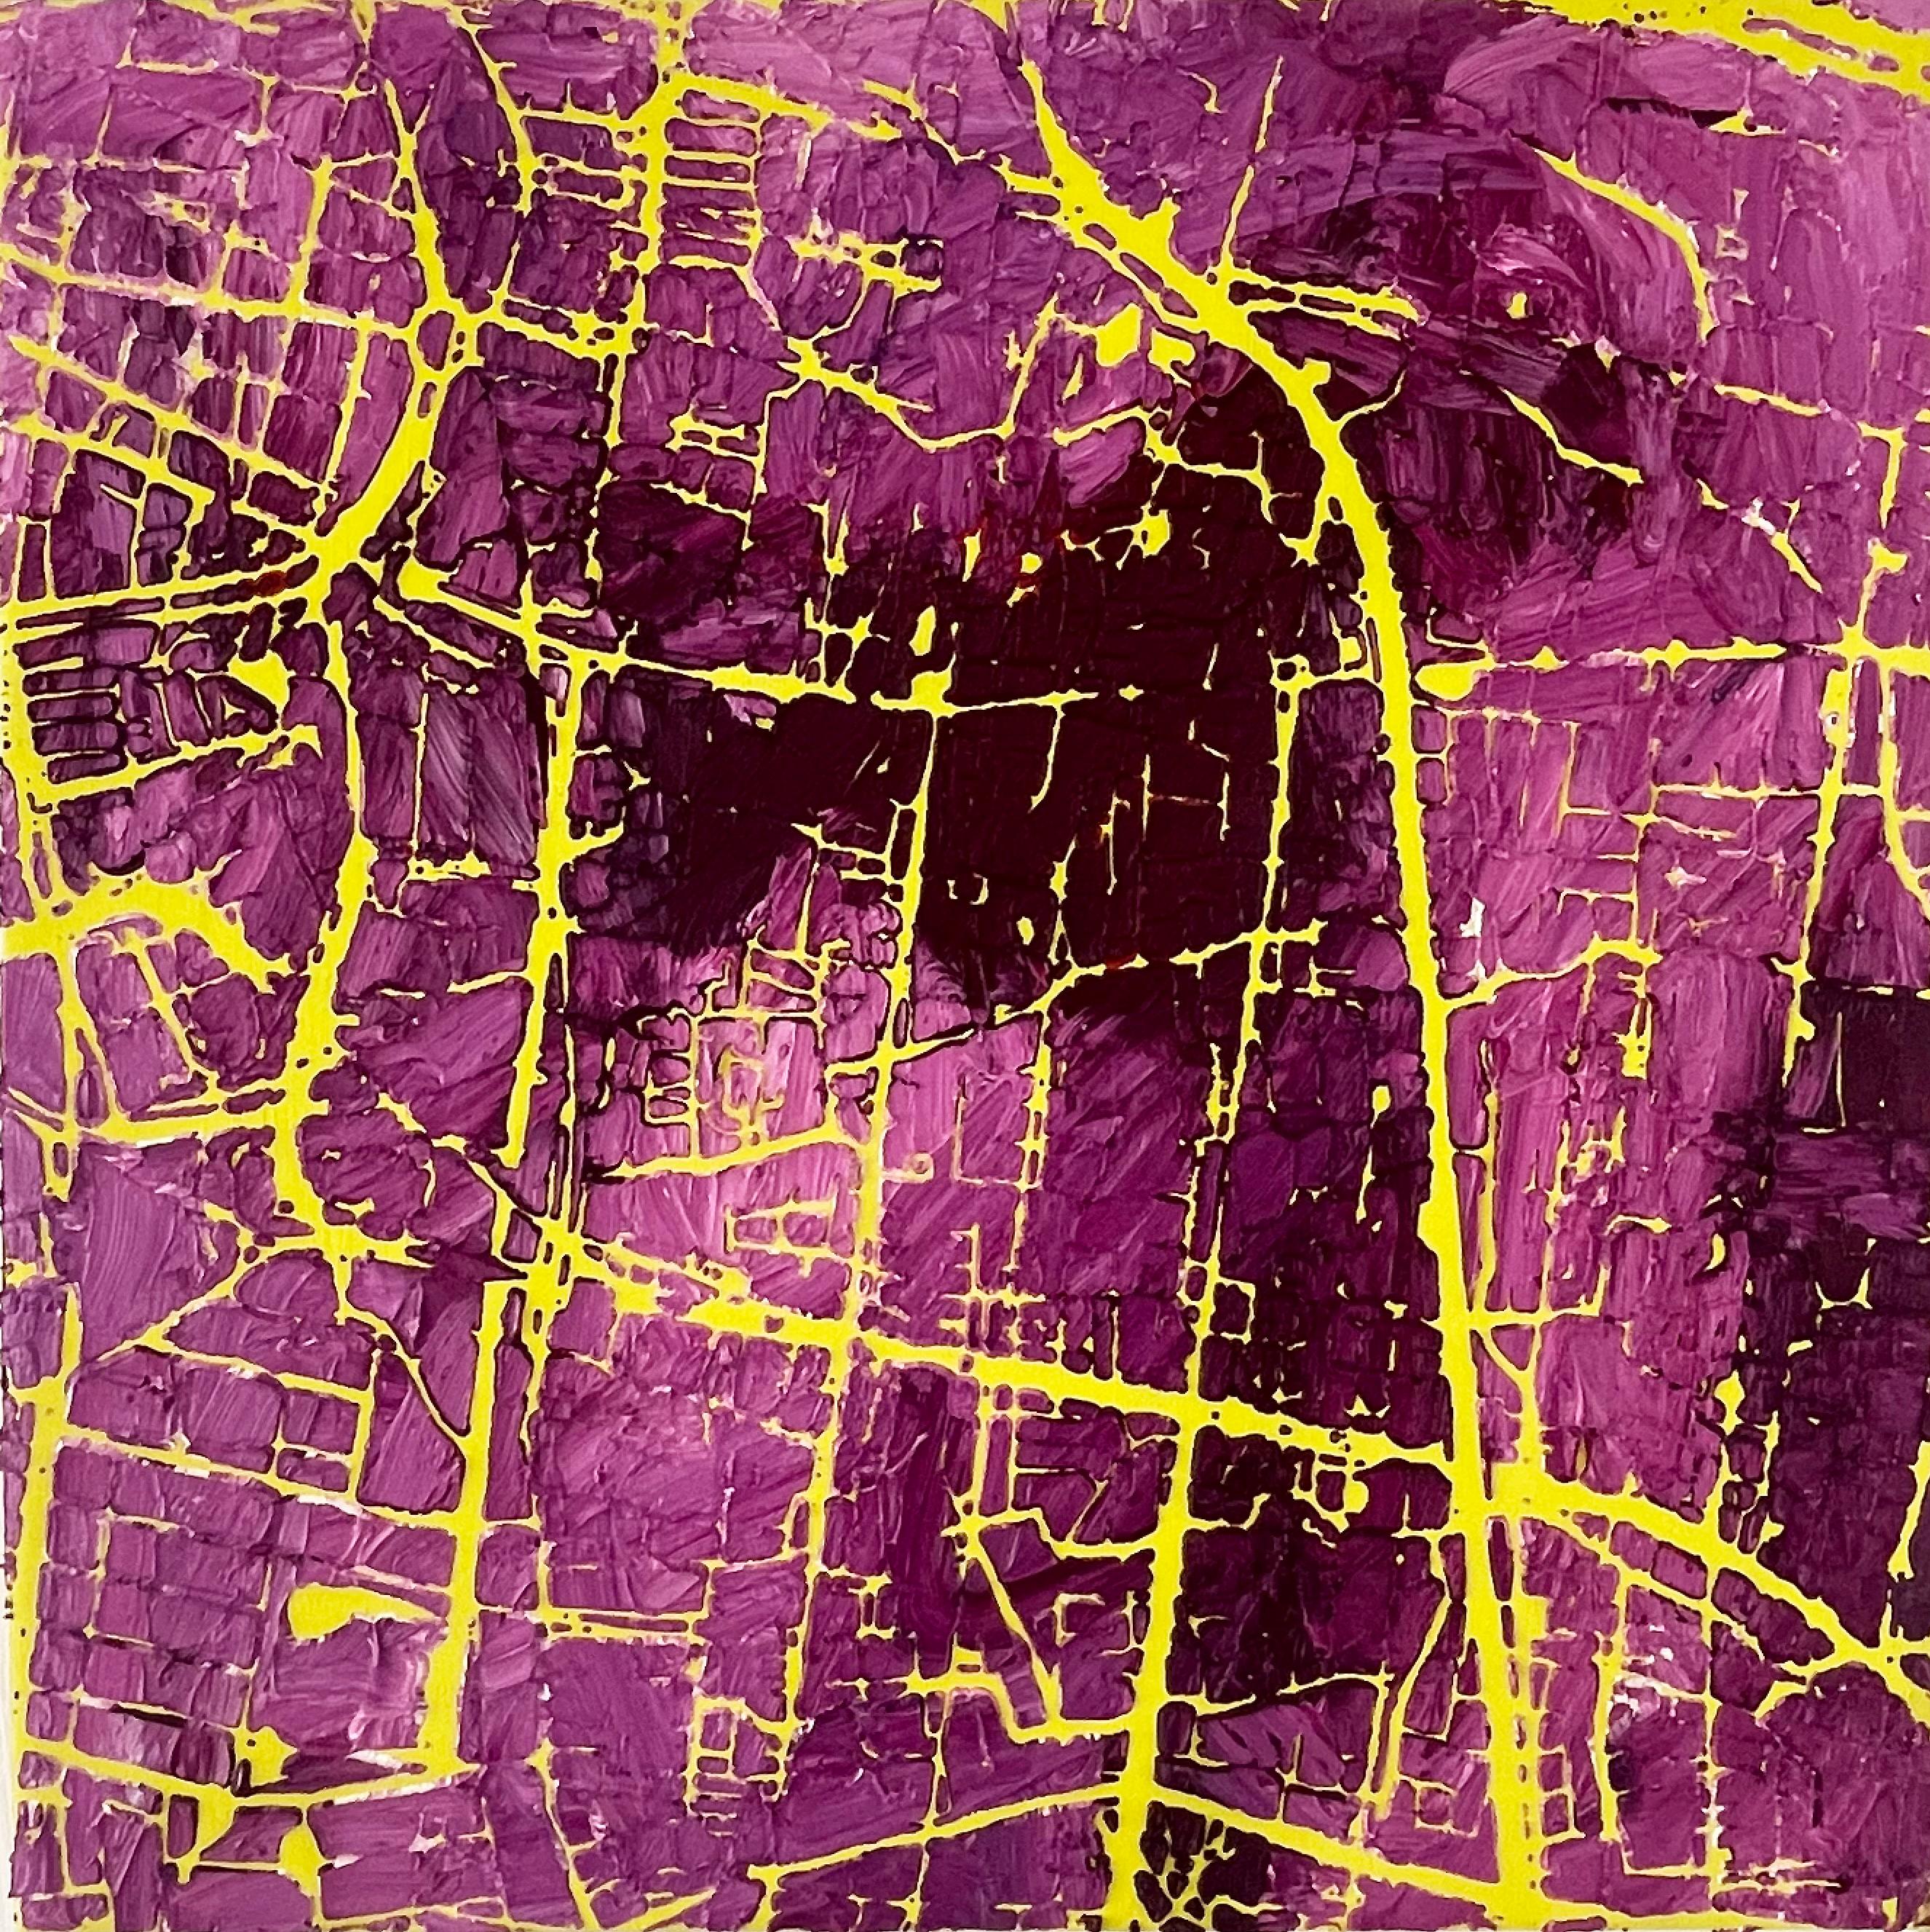 Landscape Painting Stanza - Network Purple- Contemporary Abstract Art Oil Painting Purple (Réseau pourpre - peinture à l'huile contemporaine abstraite)